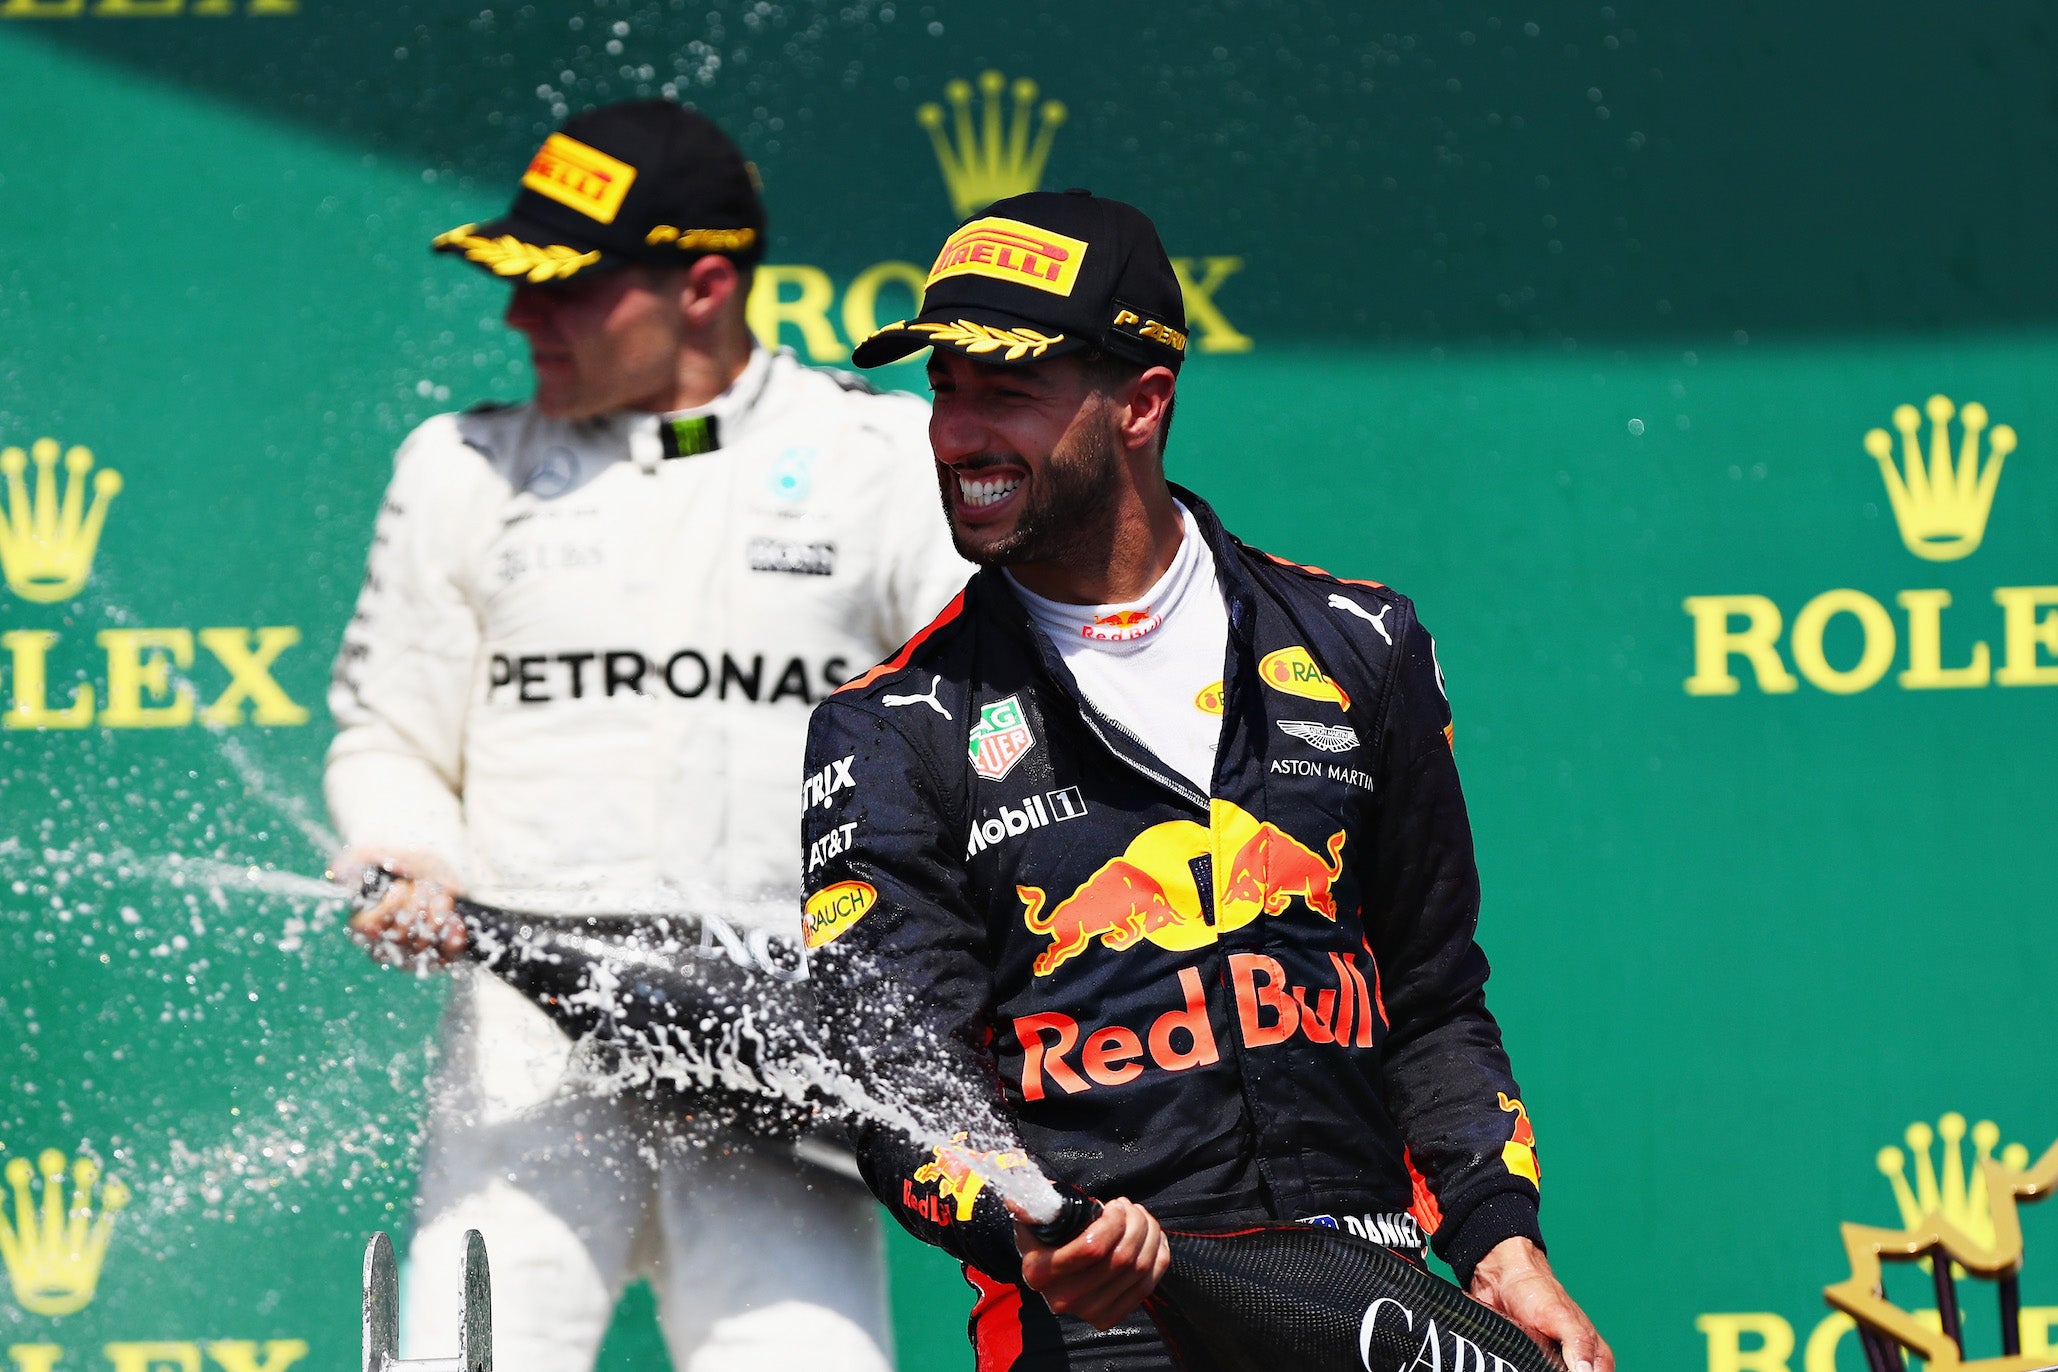 Daniel Ricciardo came in third place